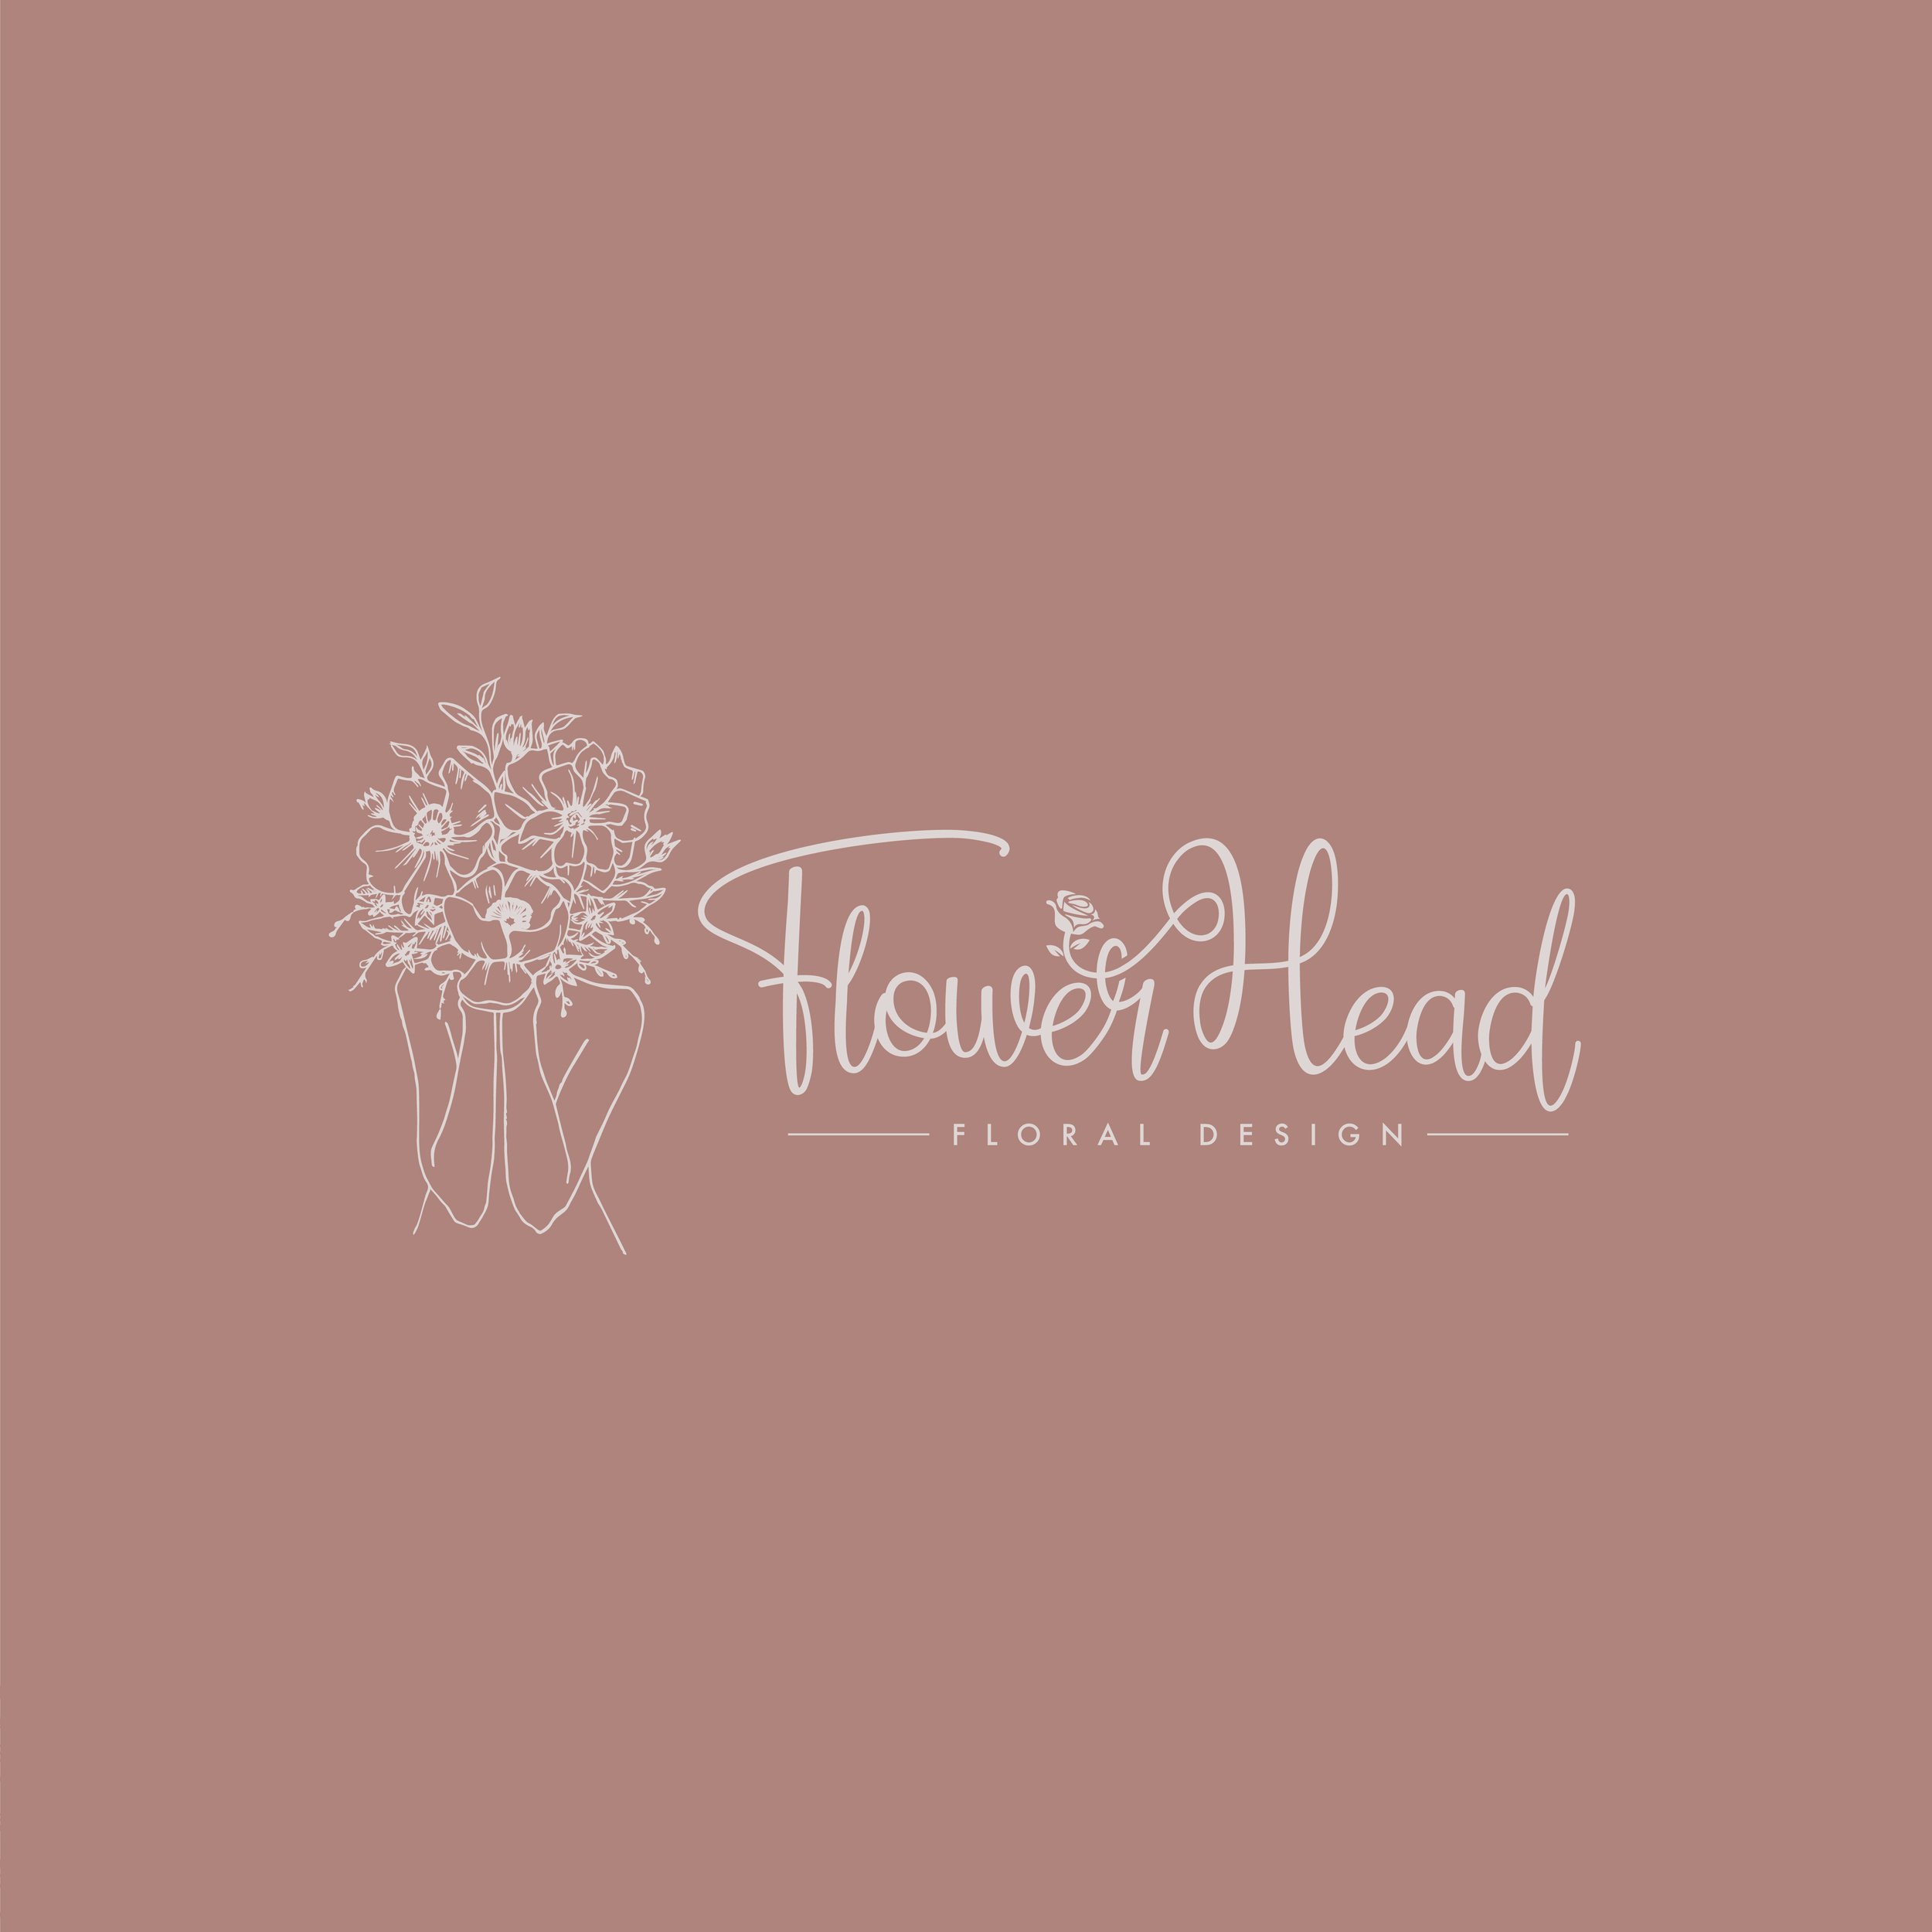 Flowerhead Instagram Post-01.jpg